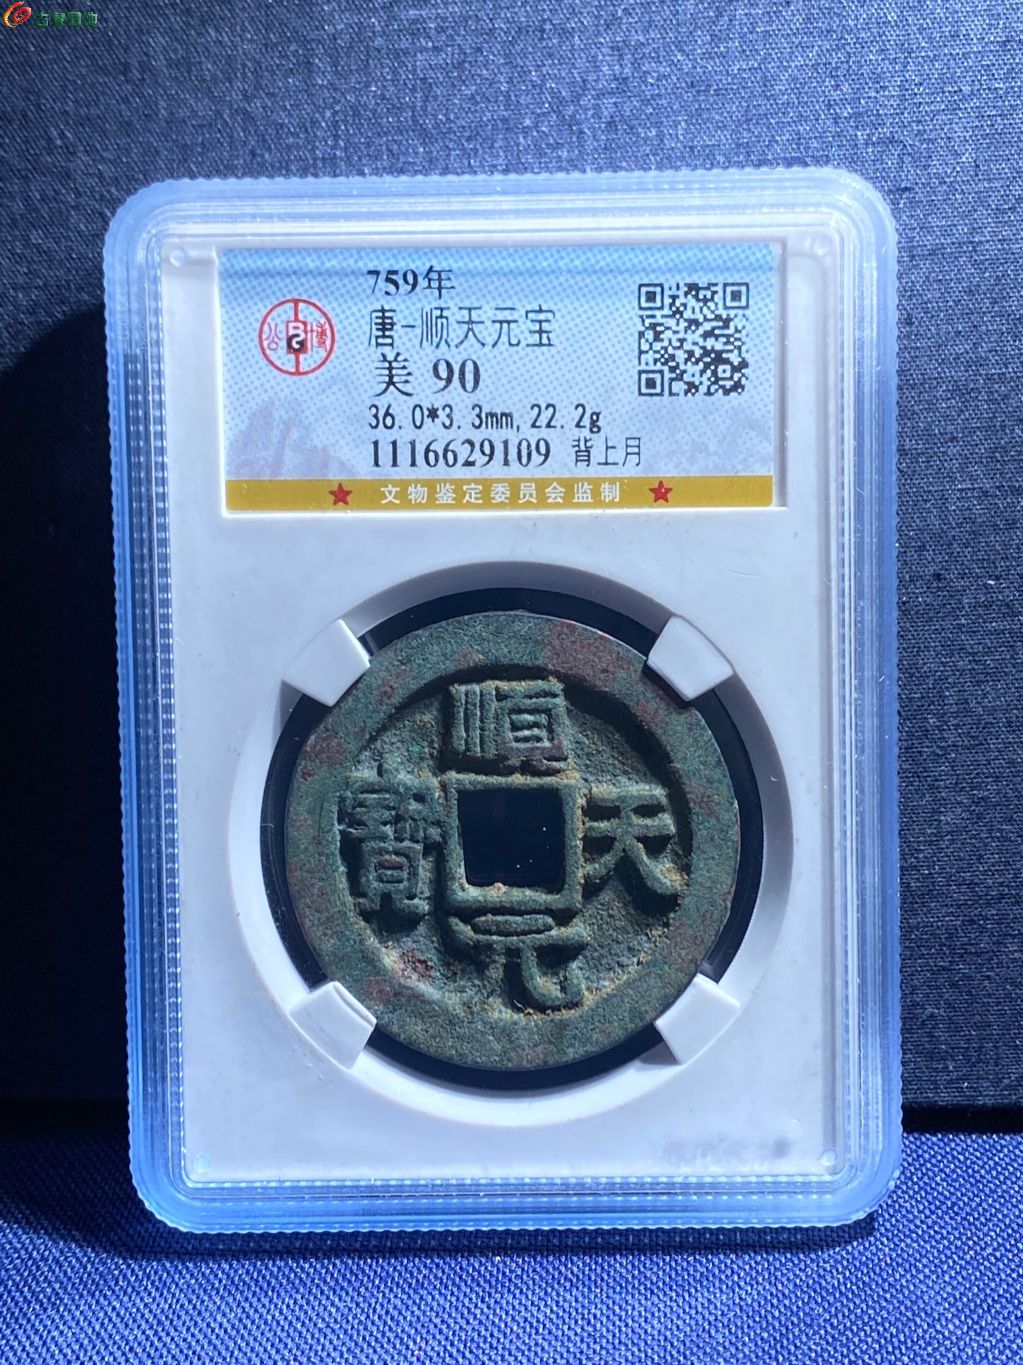 顺天元宝背上月- 九州古币收藏第102期钱币个人专场- 园地拍卖